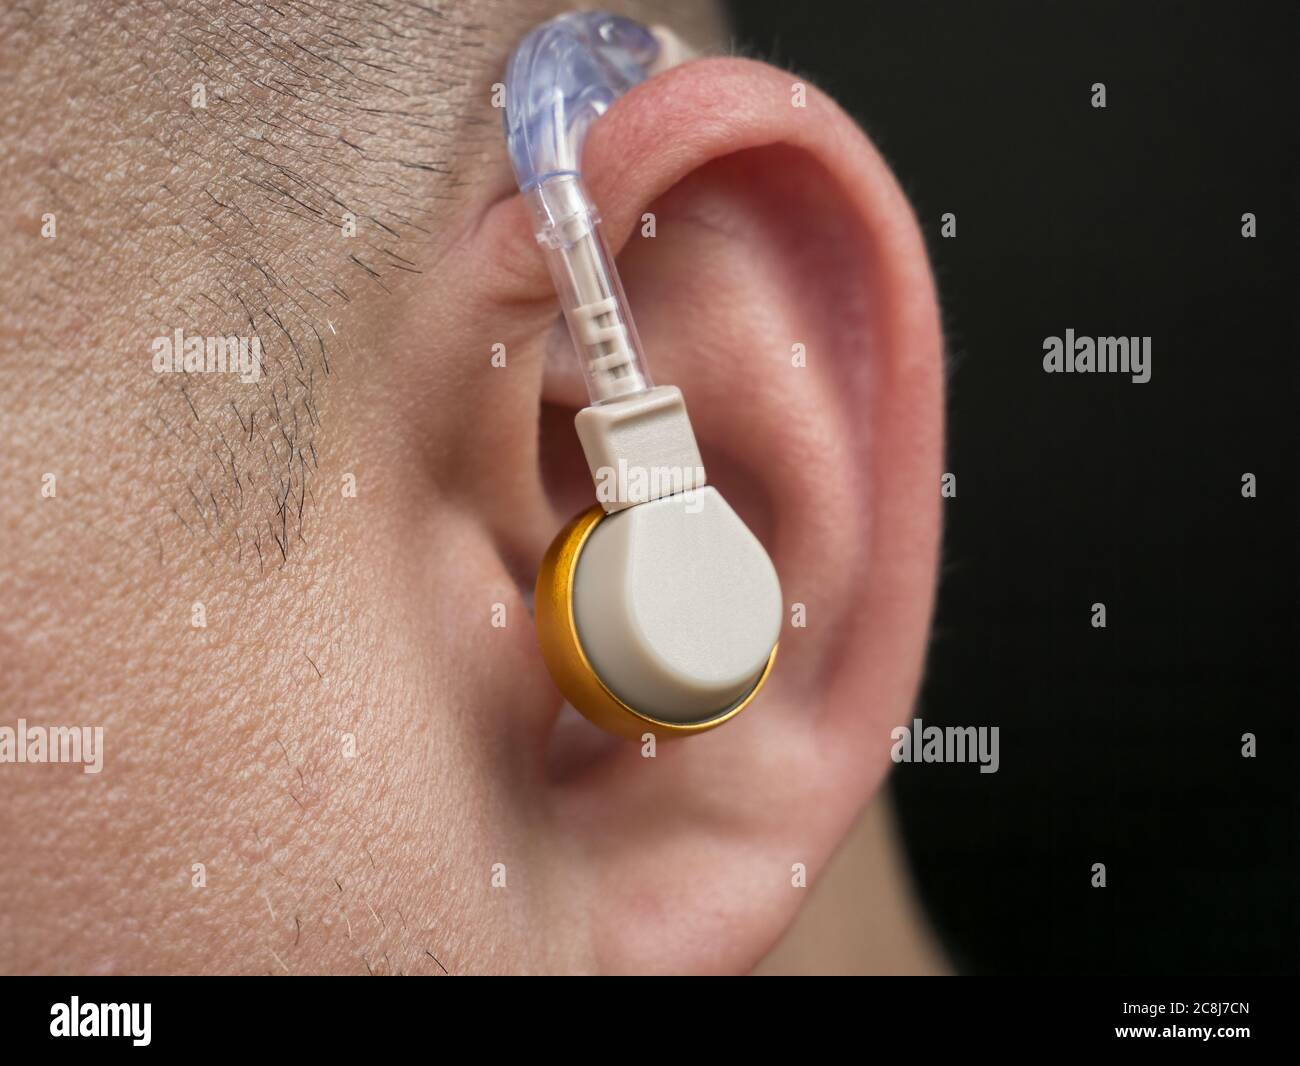 Hörgerät im Ohr eines Mannes mit Taubheit und Hörbehinderung  Stockfotografie - Alamy